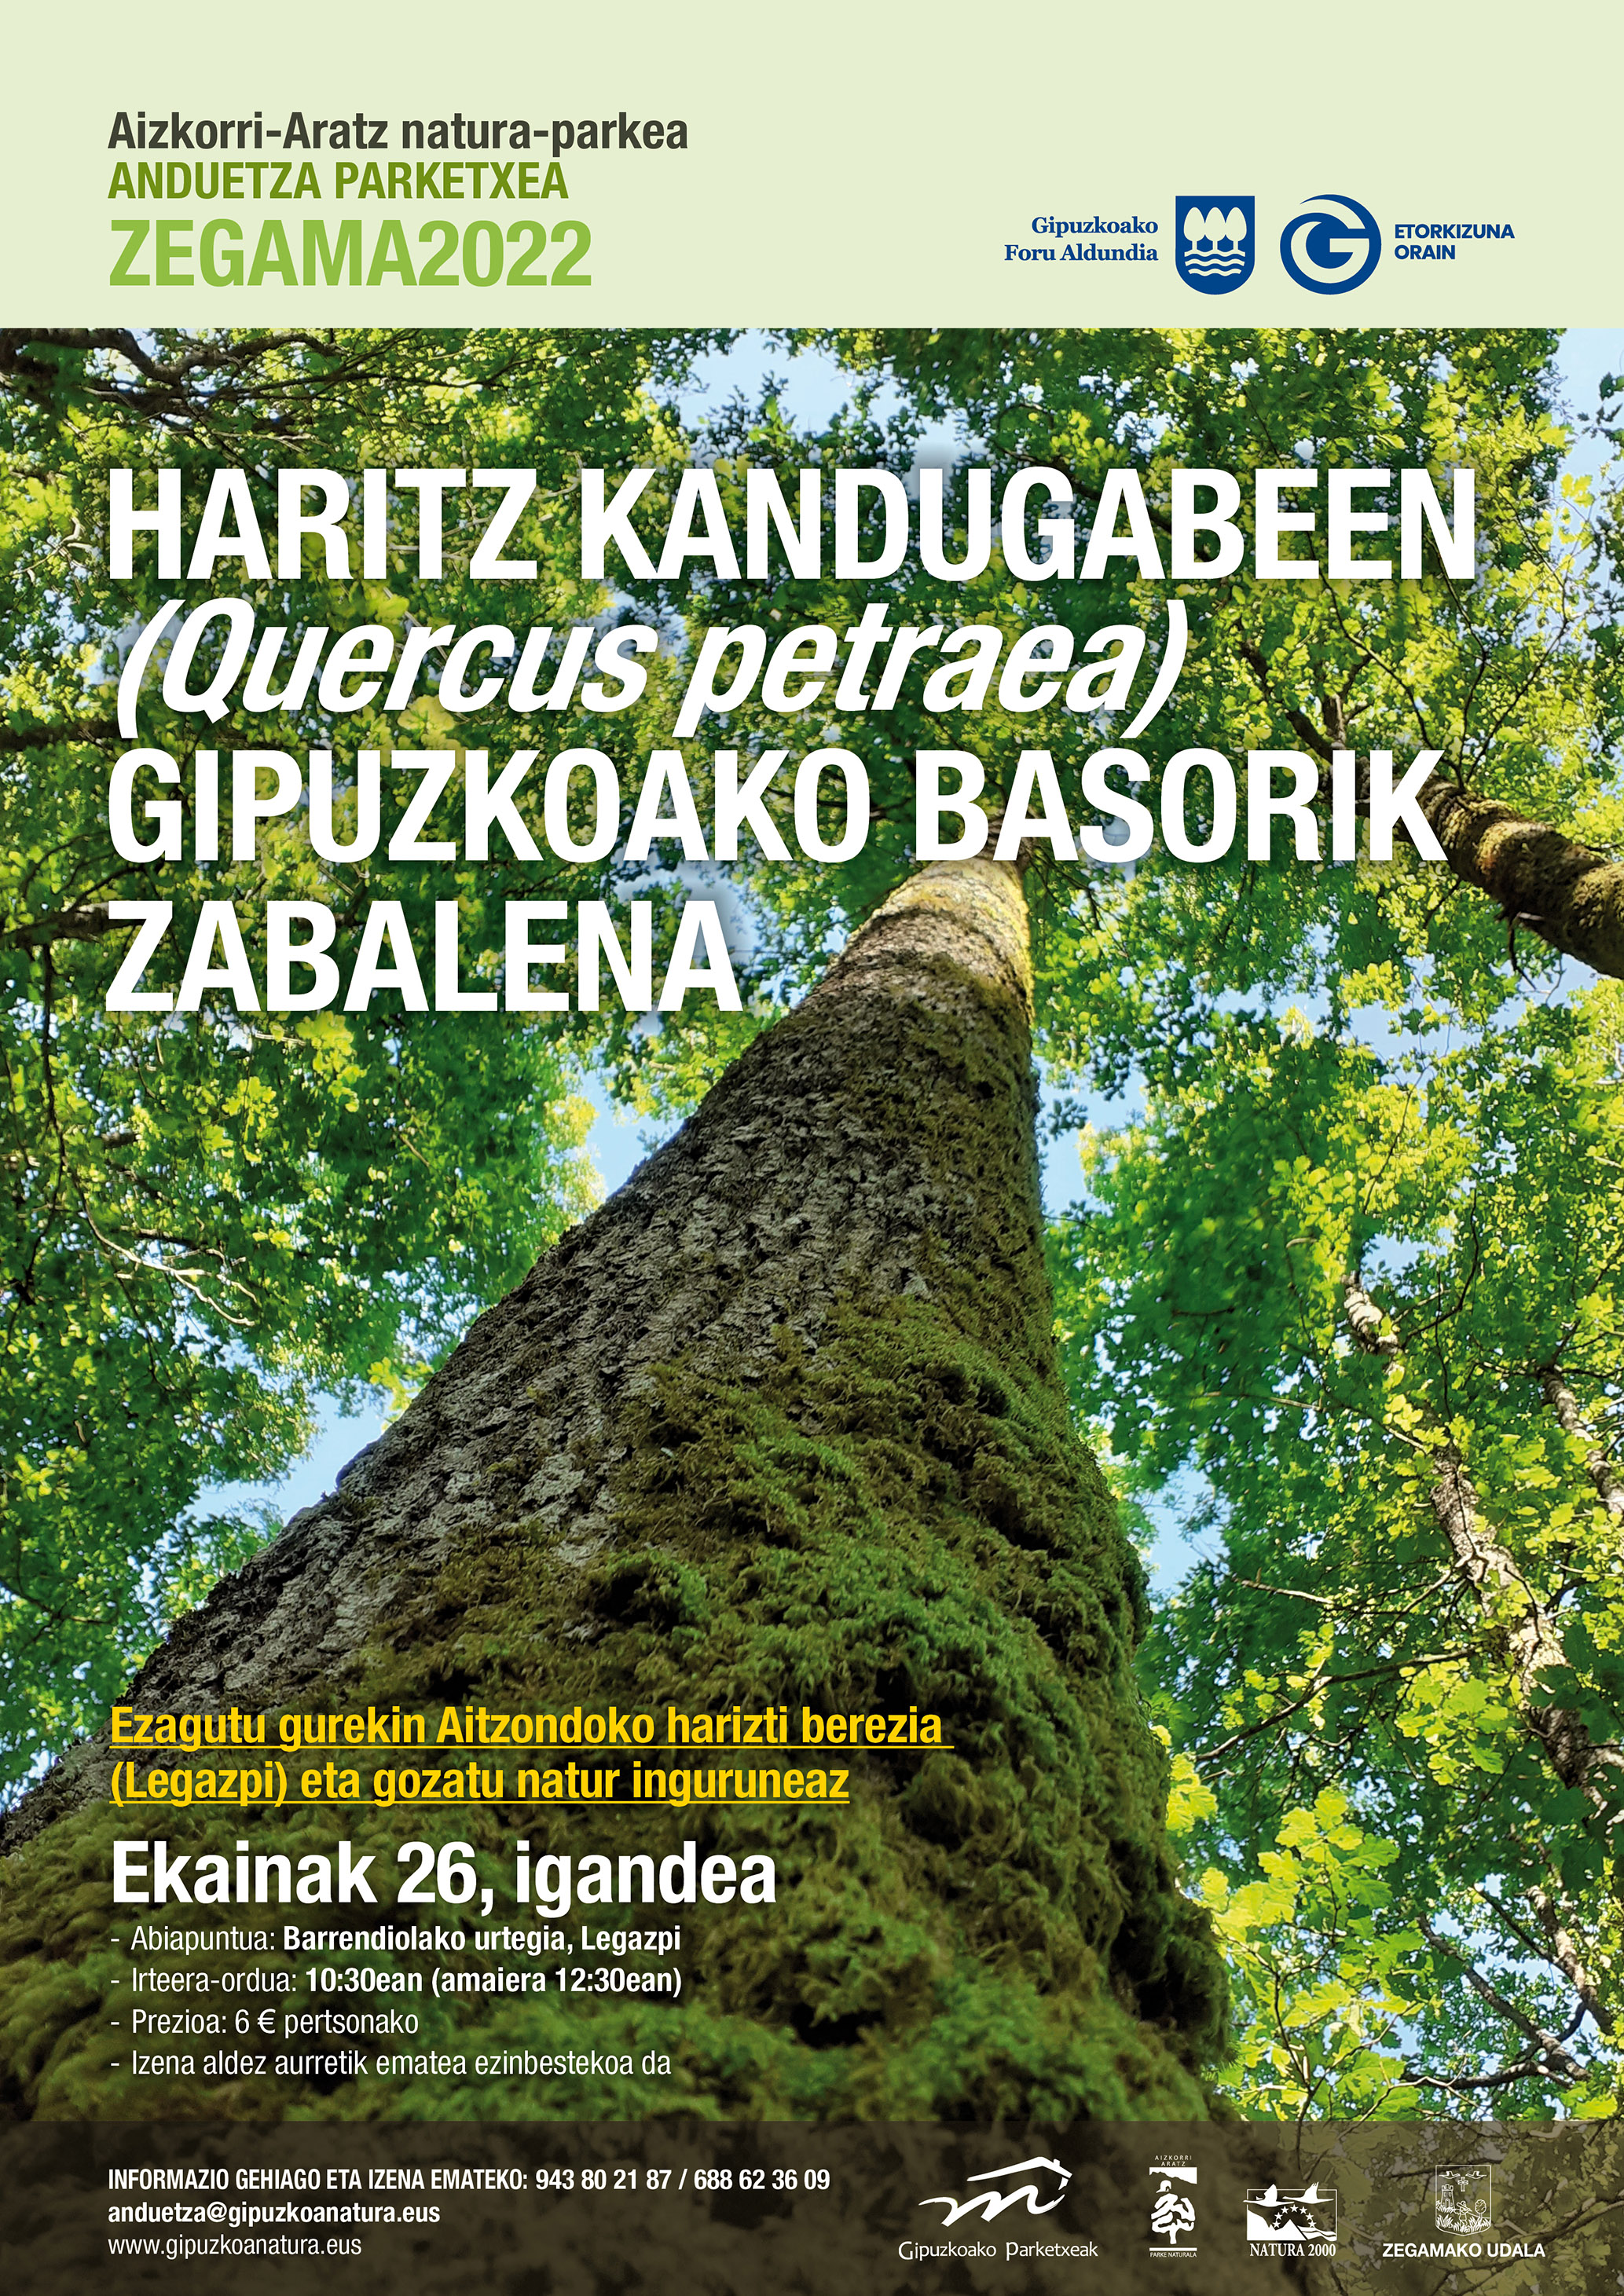 Ibilaldi gidatua: Haritz kandugabeen (Quercus petraea) Gipuzkoako basorik zabalena (Legazpi).